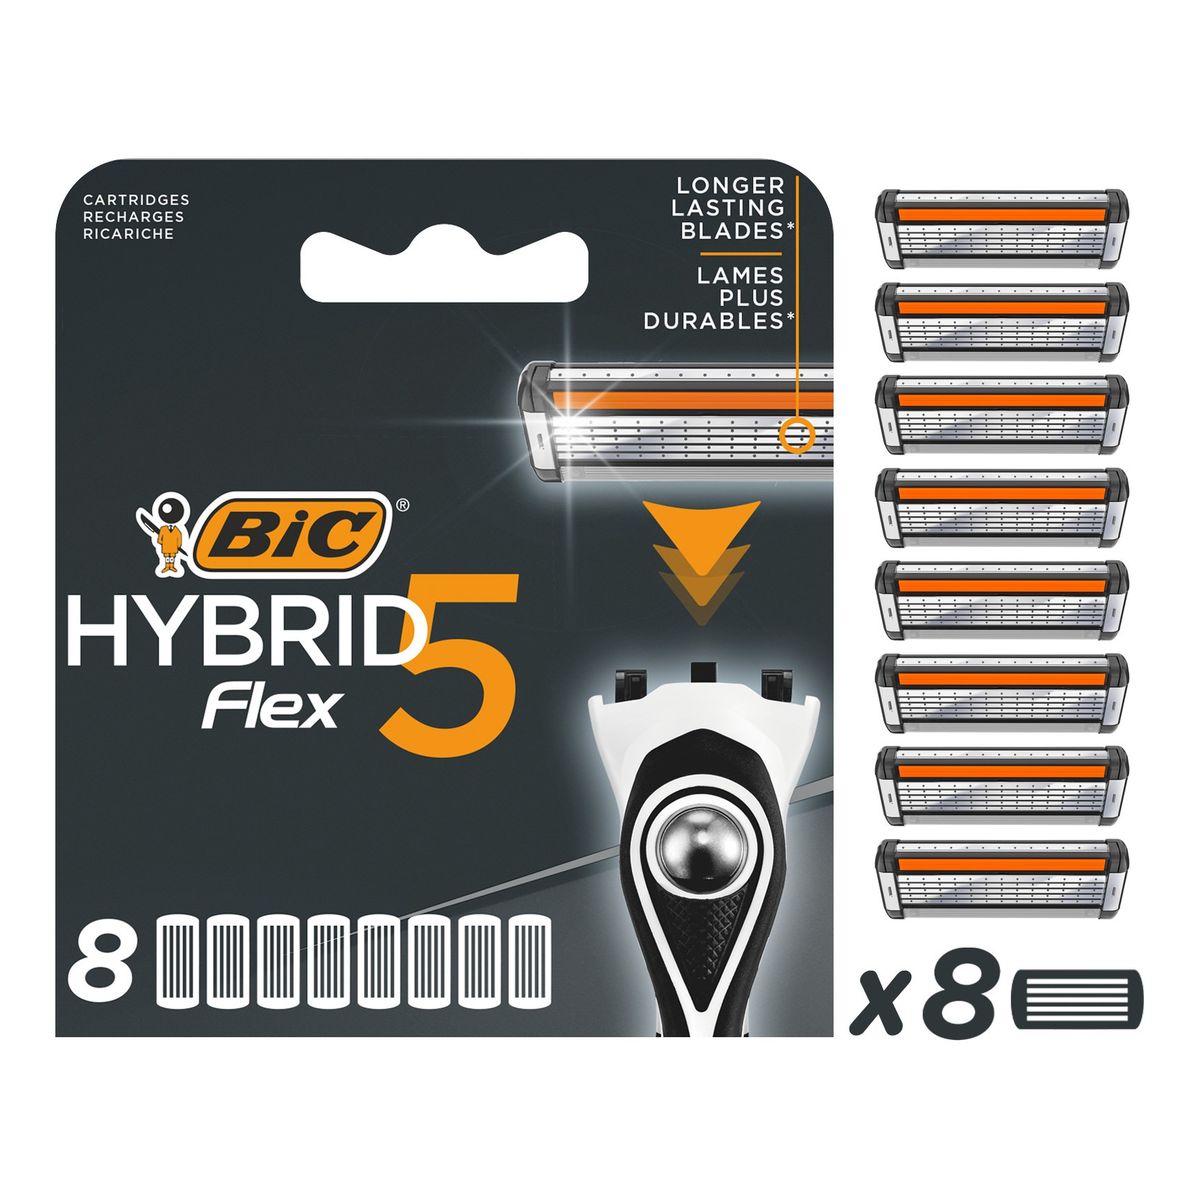 Bic Hybrid flex 5 wkłady do maszynki-blister 1op.8szt